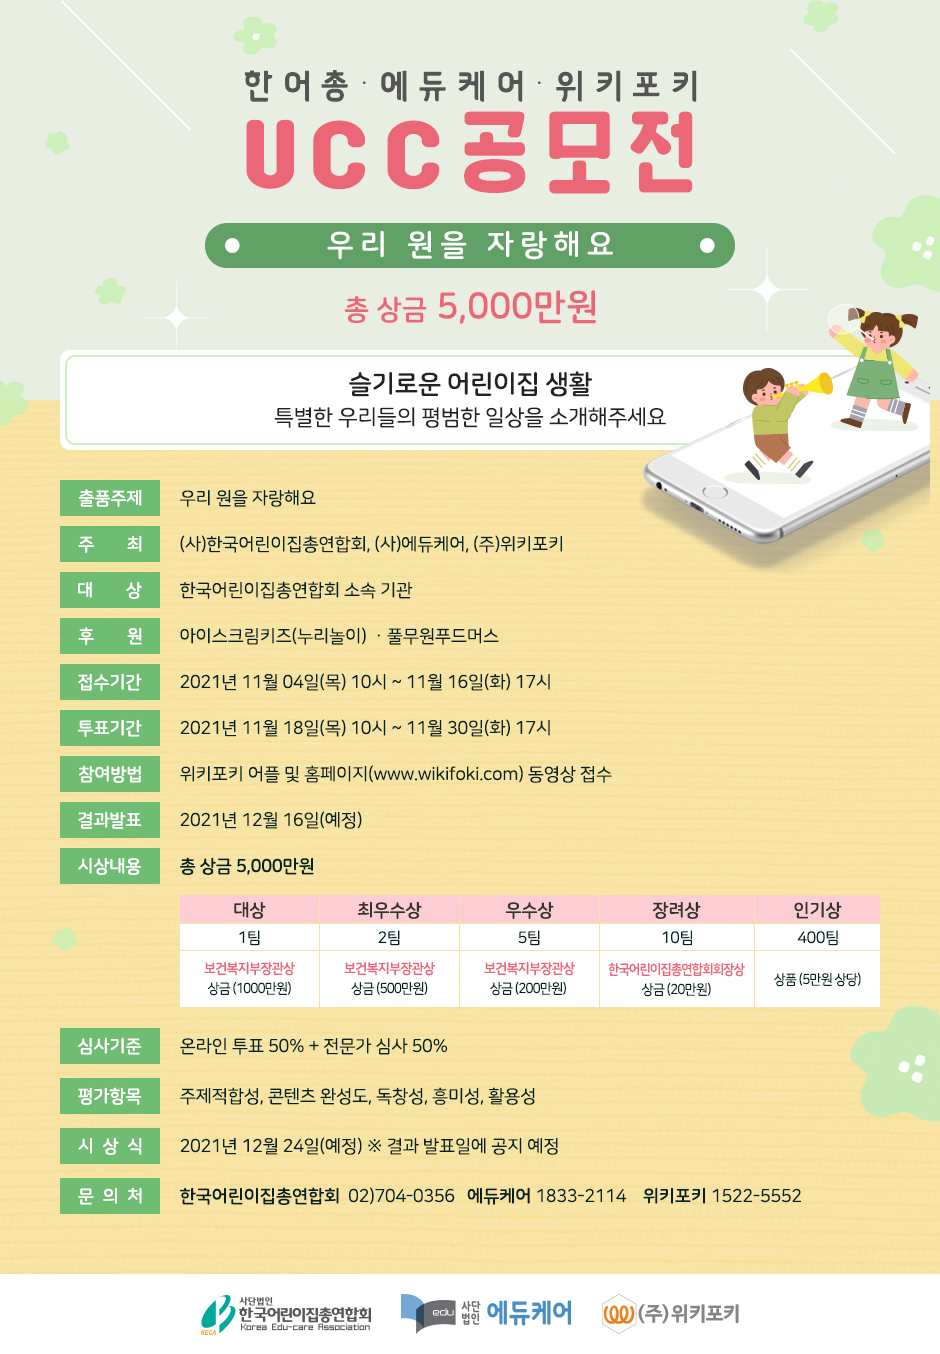 상위 첨부파일 중 '붙임2. 한국어린이집총연합회UCC공모전 포스터.jpg'을 다운로드 받으세요. 내용 일치